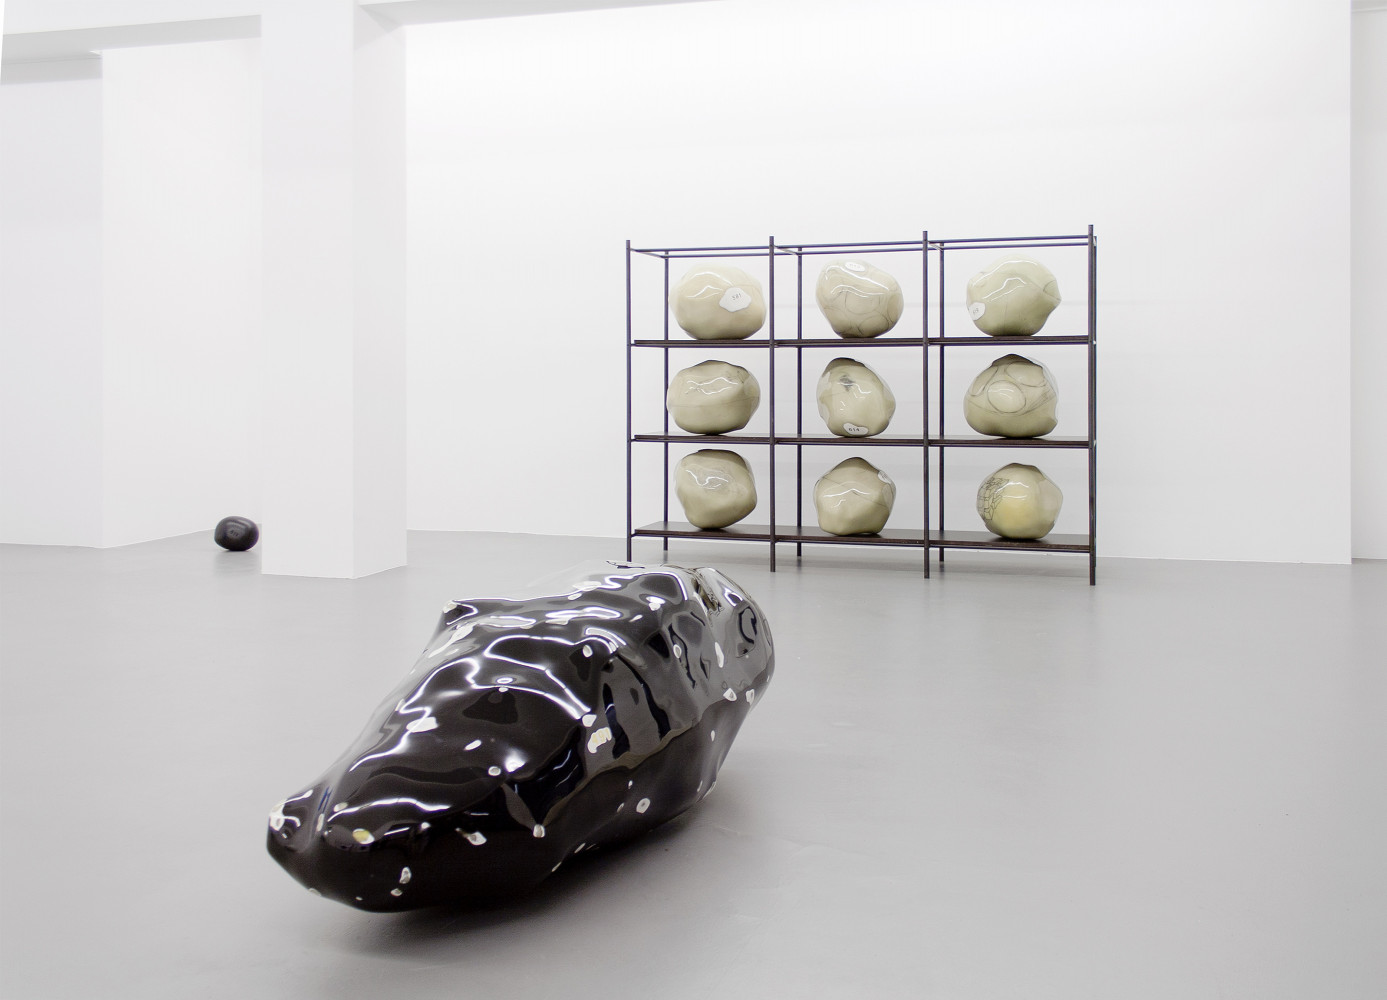 Wilhelm Mundt, ‘Klumpen’, Installation view, Buchmann Galerie, 2015